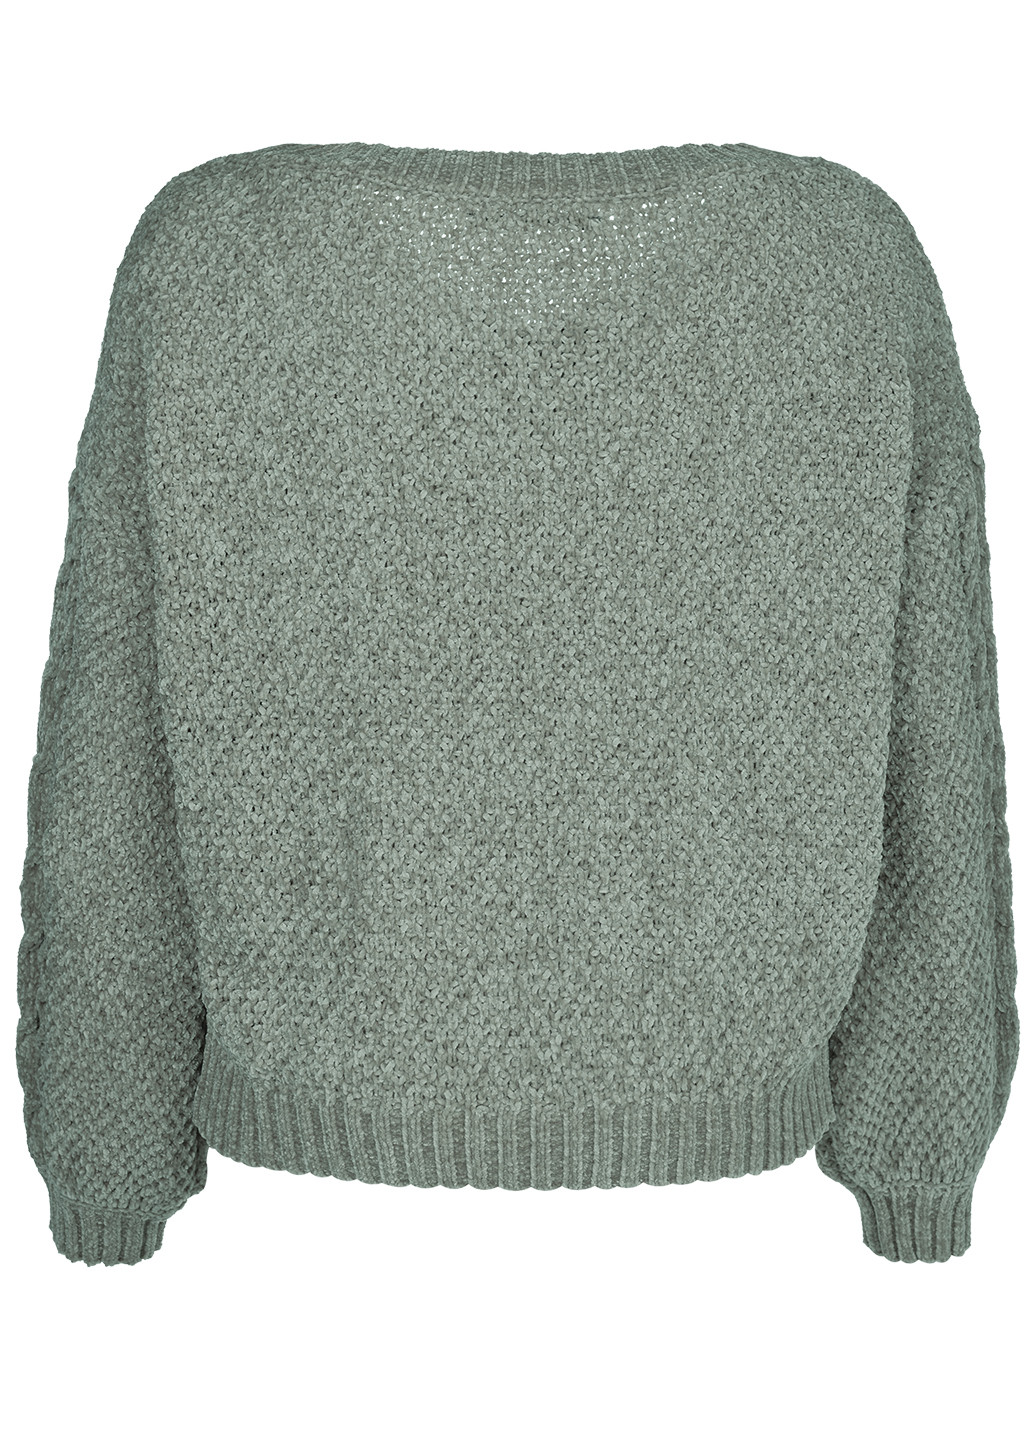 Светло-зеленый демисезонный джемпер пуловер LOVE REPUBLIC